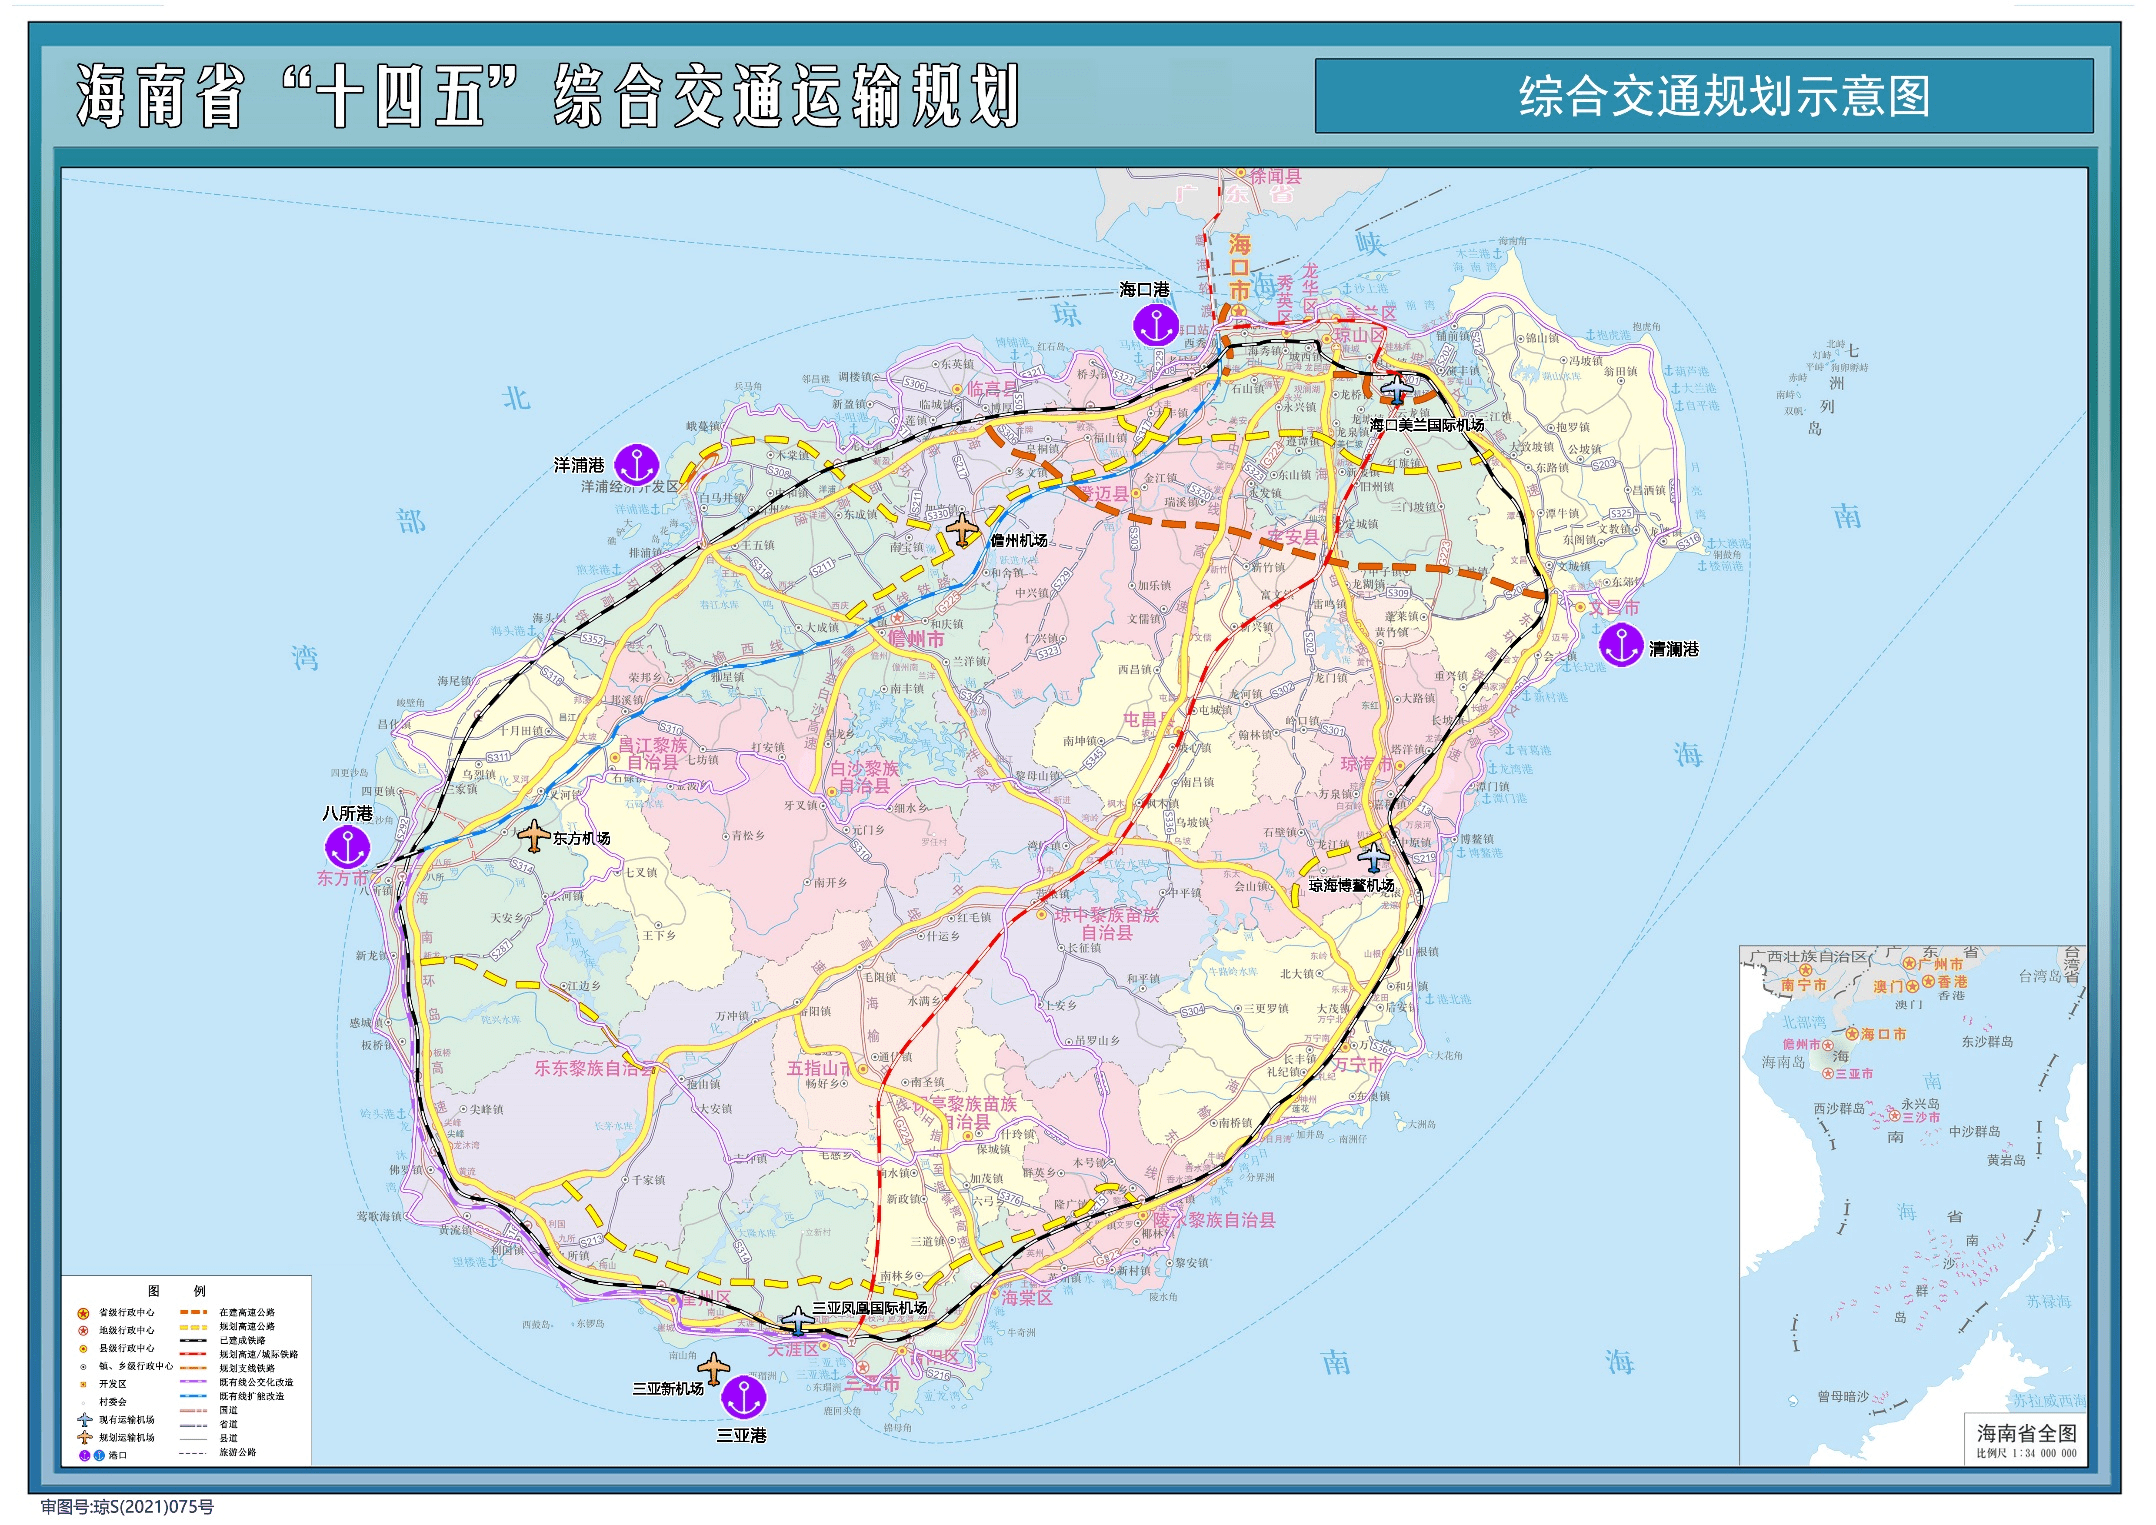 海南最新交通运输规划出台 将加快"跨海环岛城际化"铁路网建设